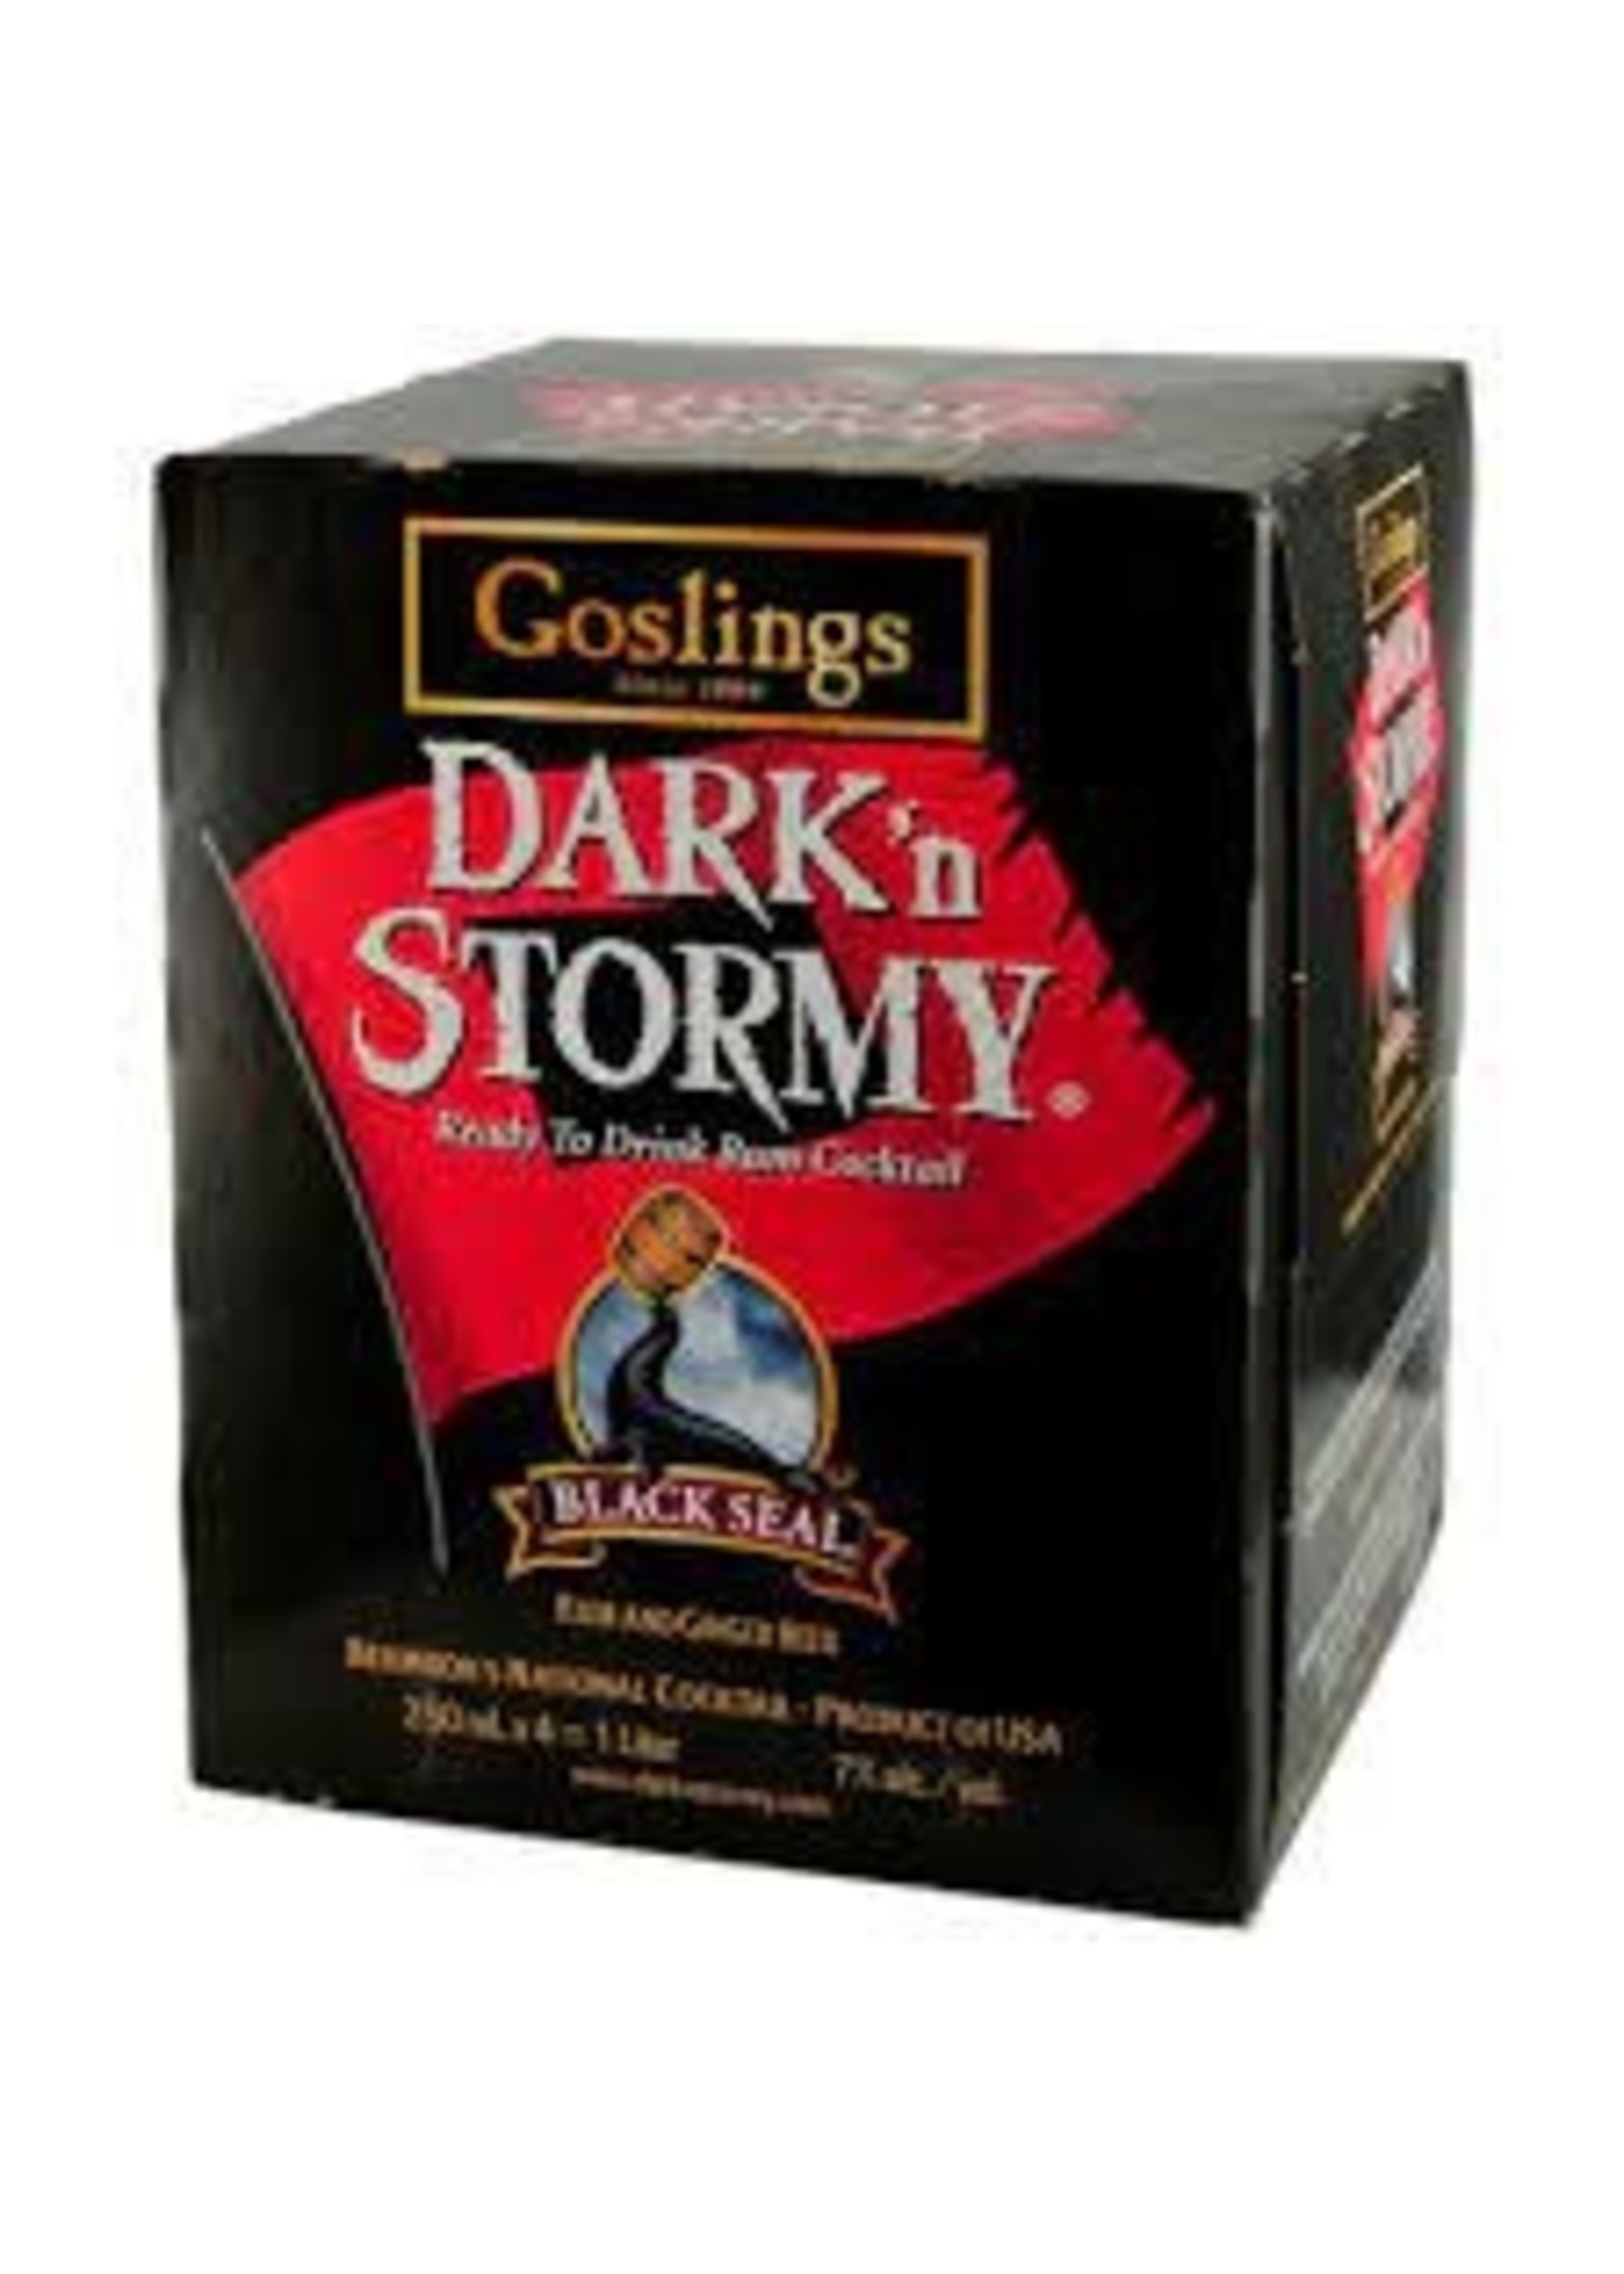 GOSLING'S GOSLING'S	DARK'N STORMY - RTD	.355L (4PK)